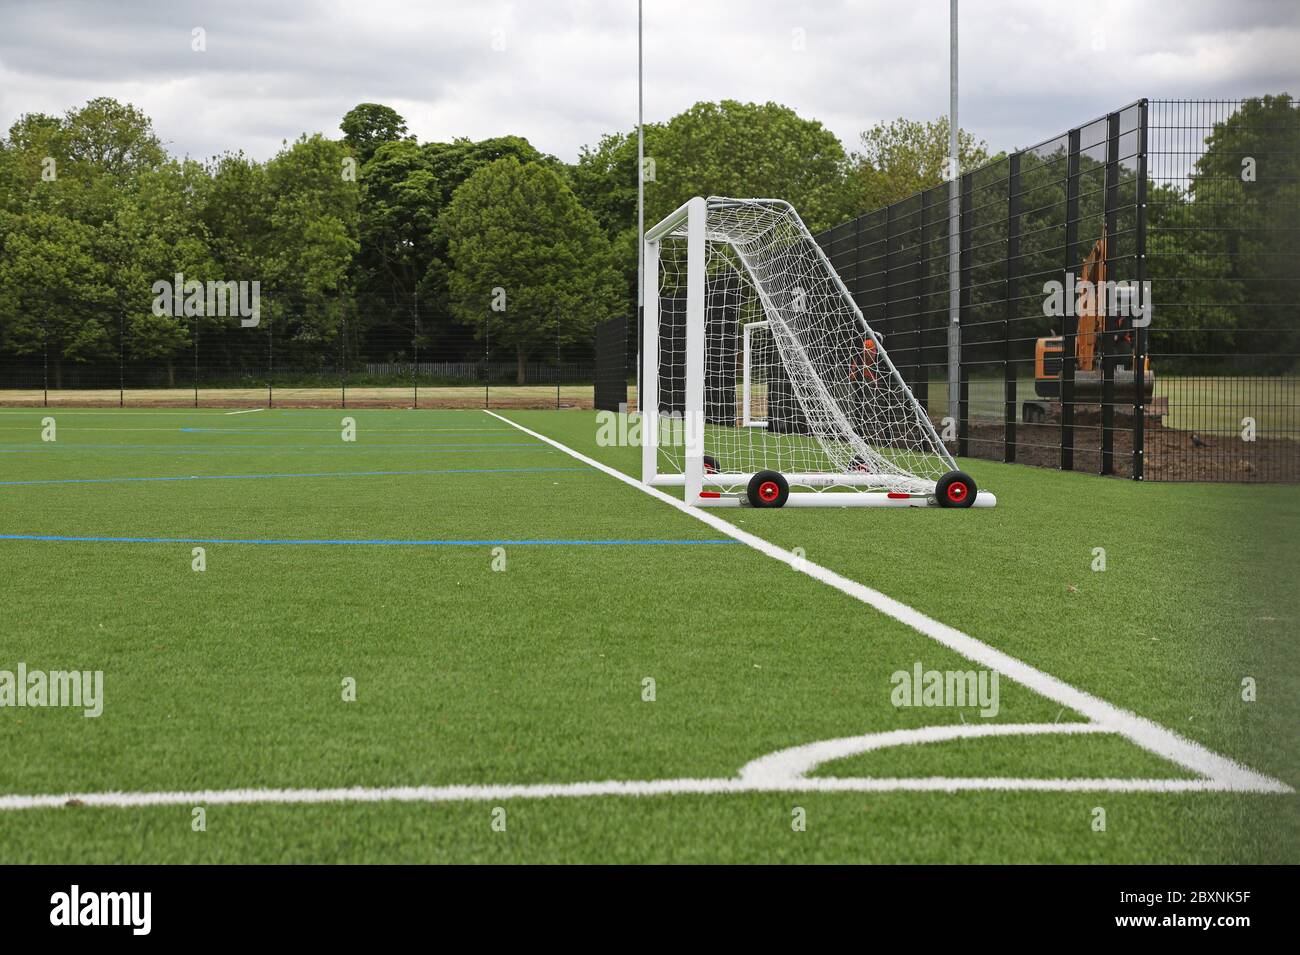 Un nouveau terrain de sport scolaire tout temps en herbe artificielle. Affiche la disposition du football avec un objectif et un angle de terrain. Londres, Royaume-Uni. Banque D'Images